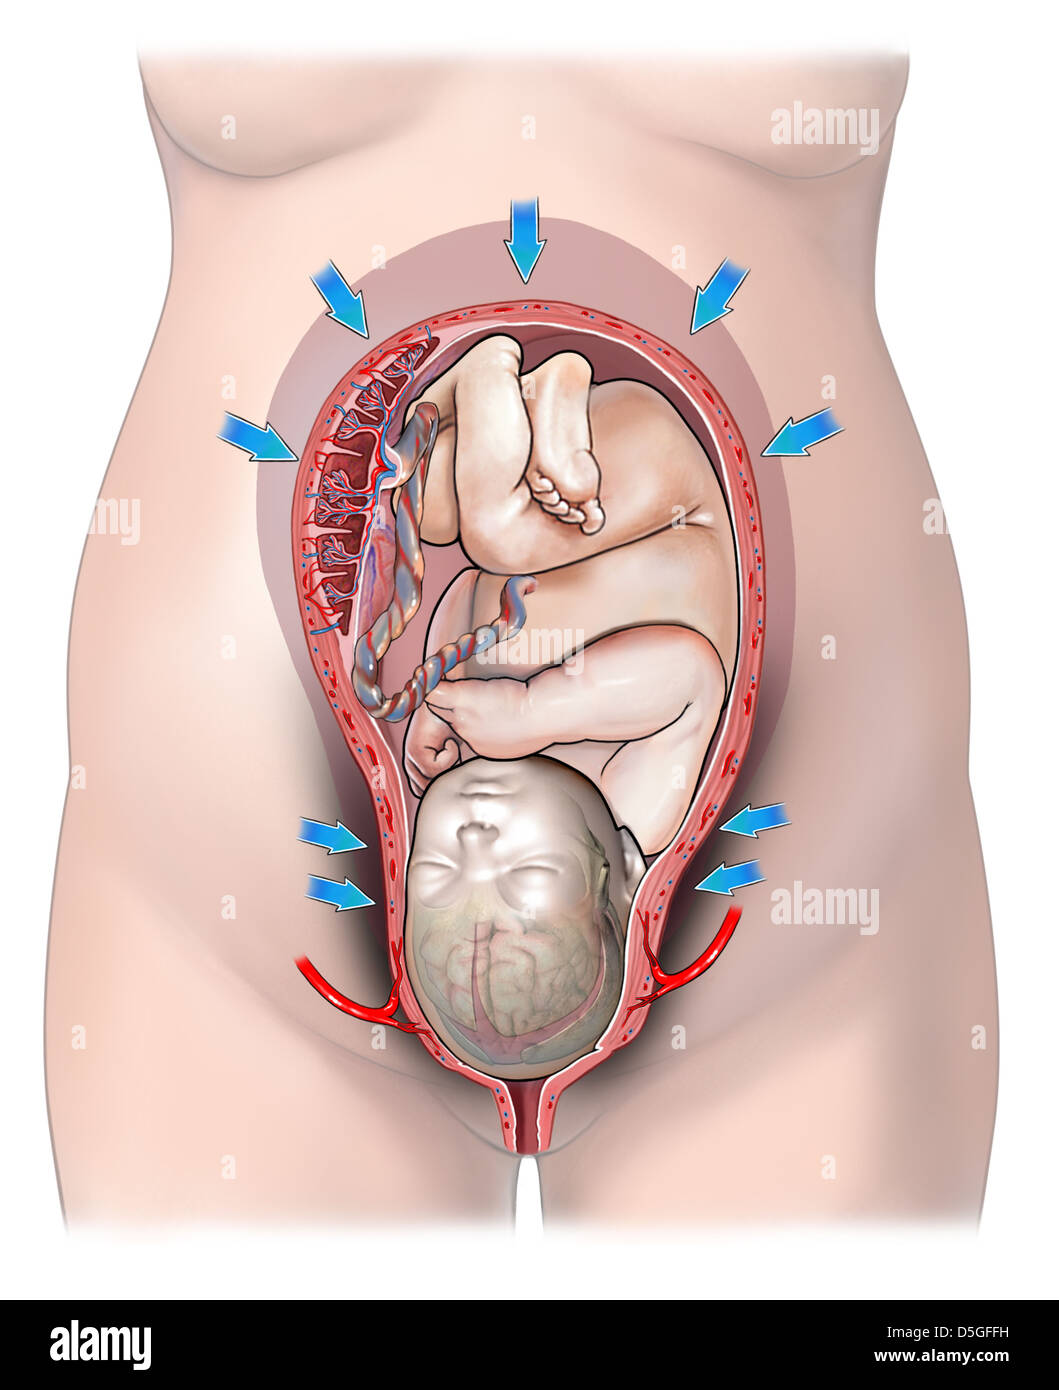 Las contracciones uterinas normales durante el parto Foto de stock